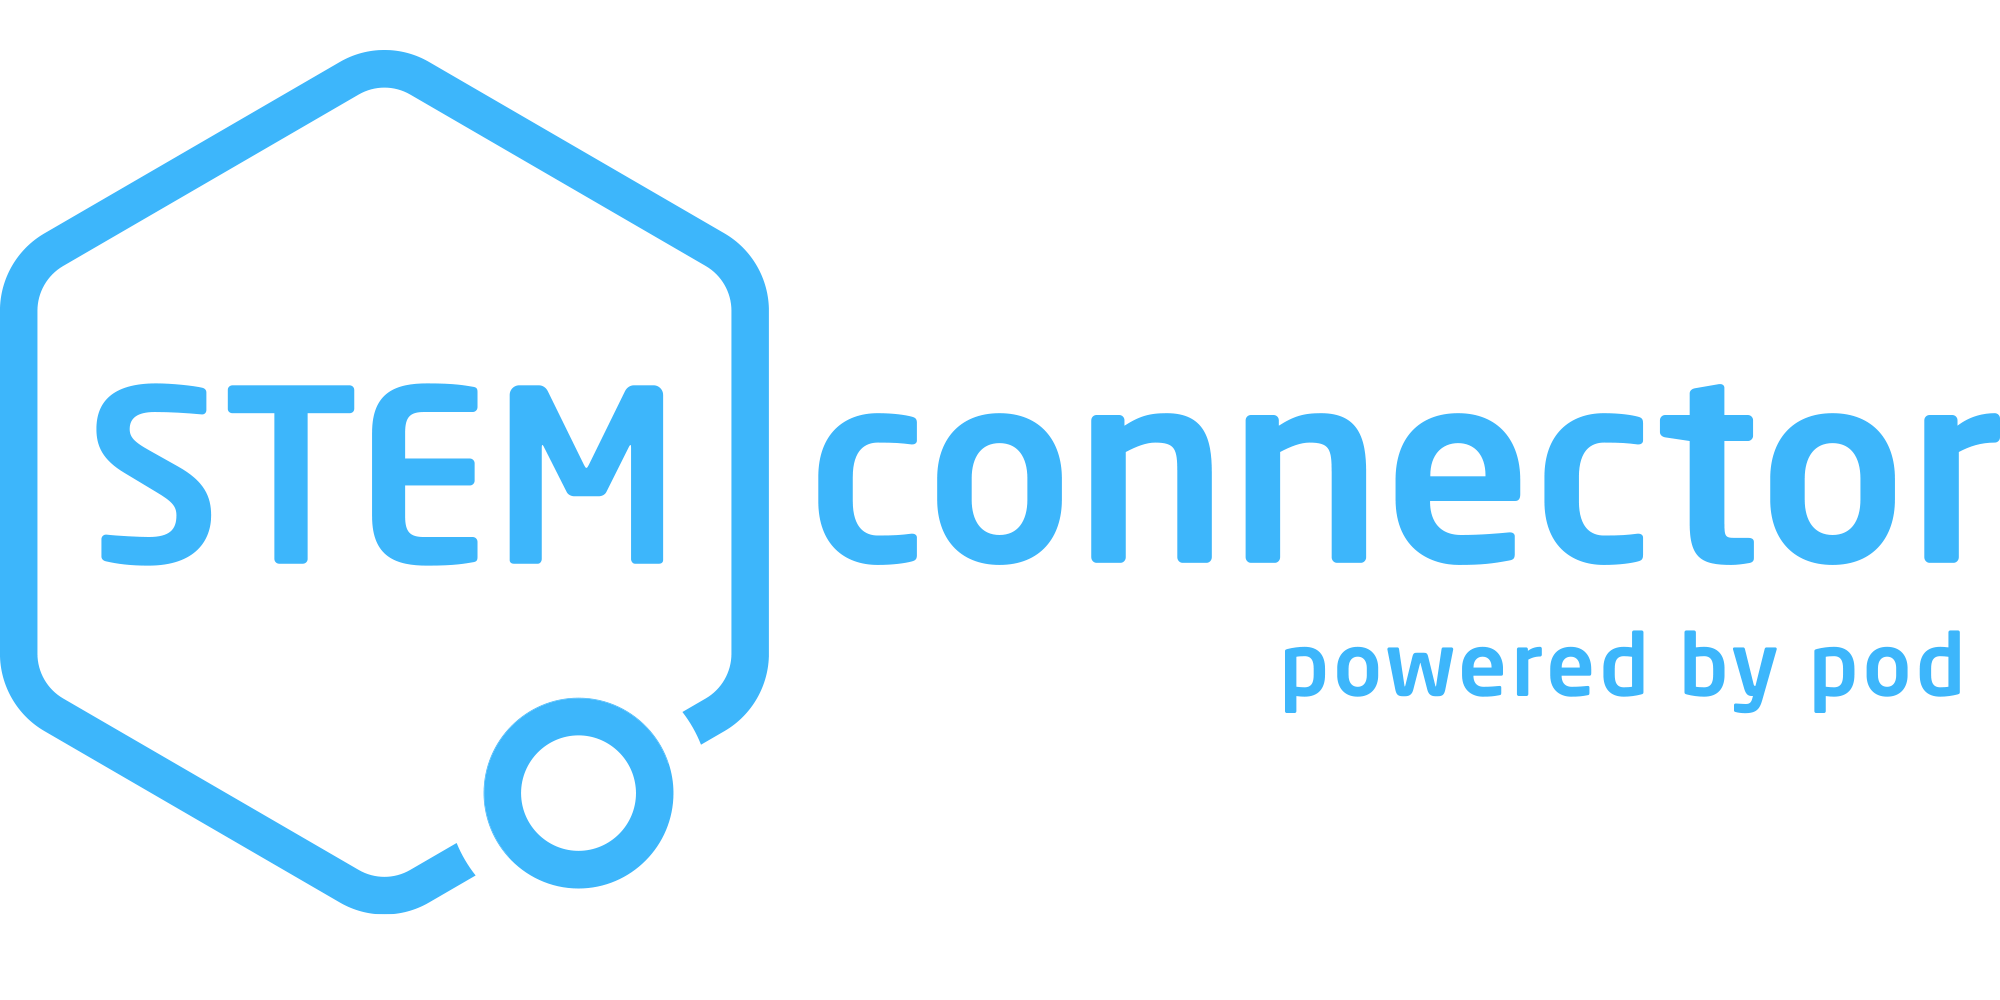 STEMconnector logo